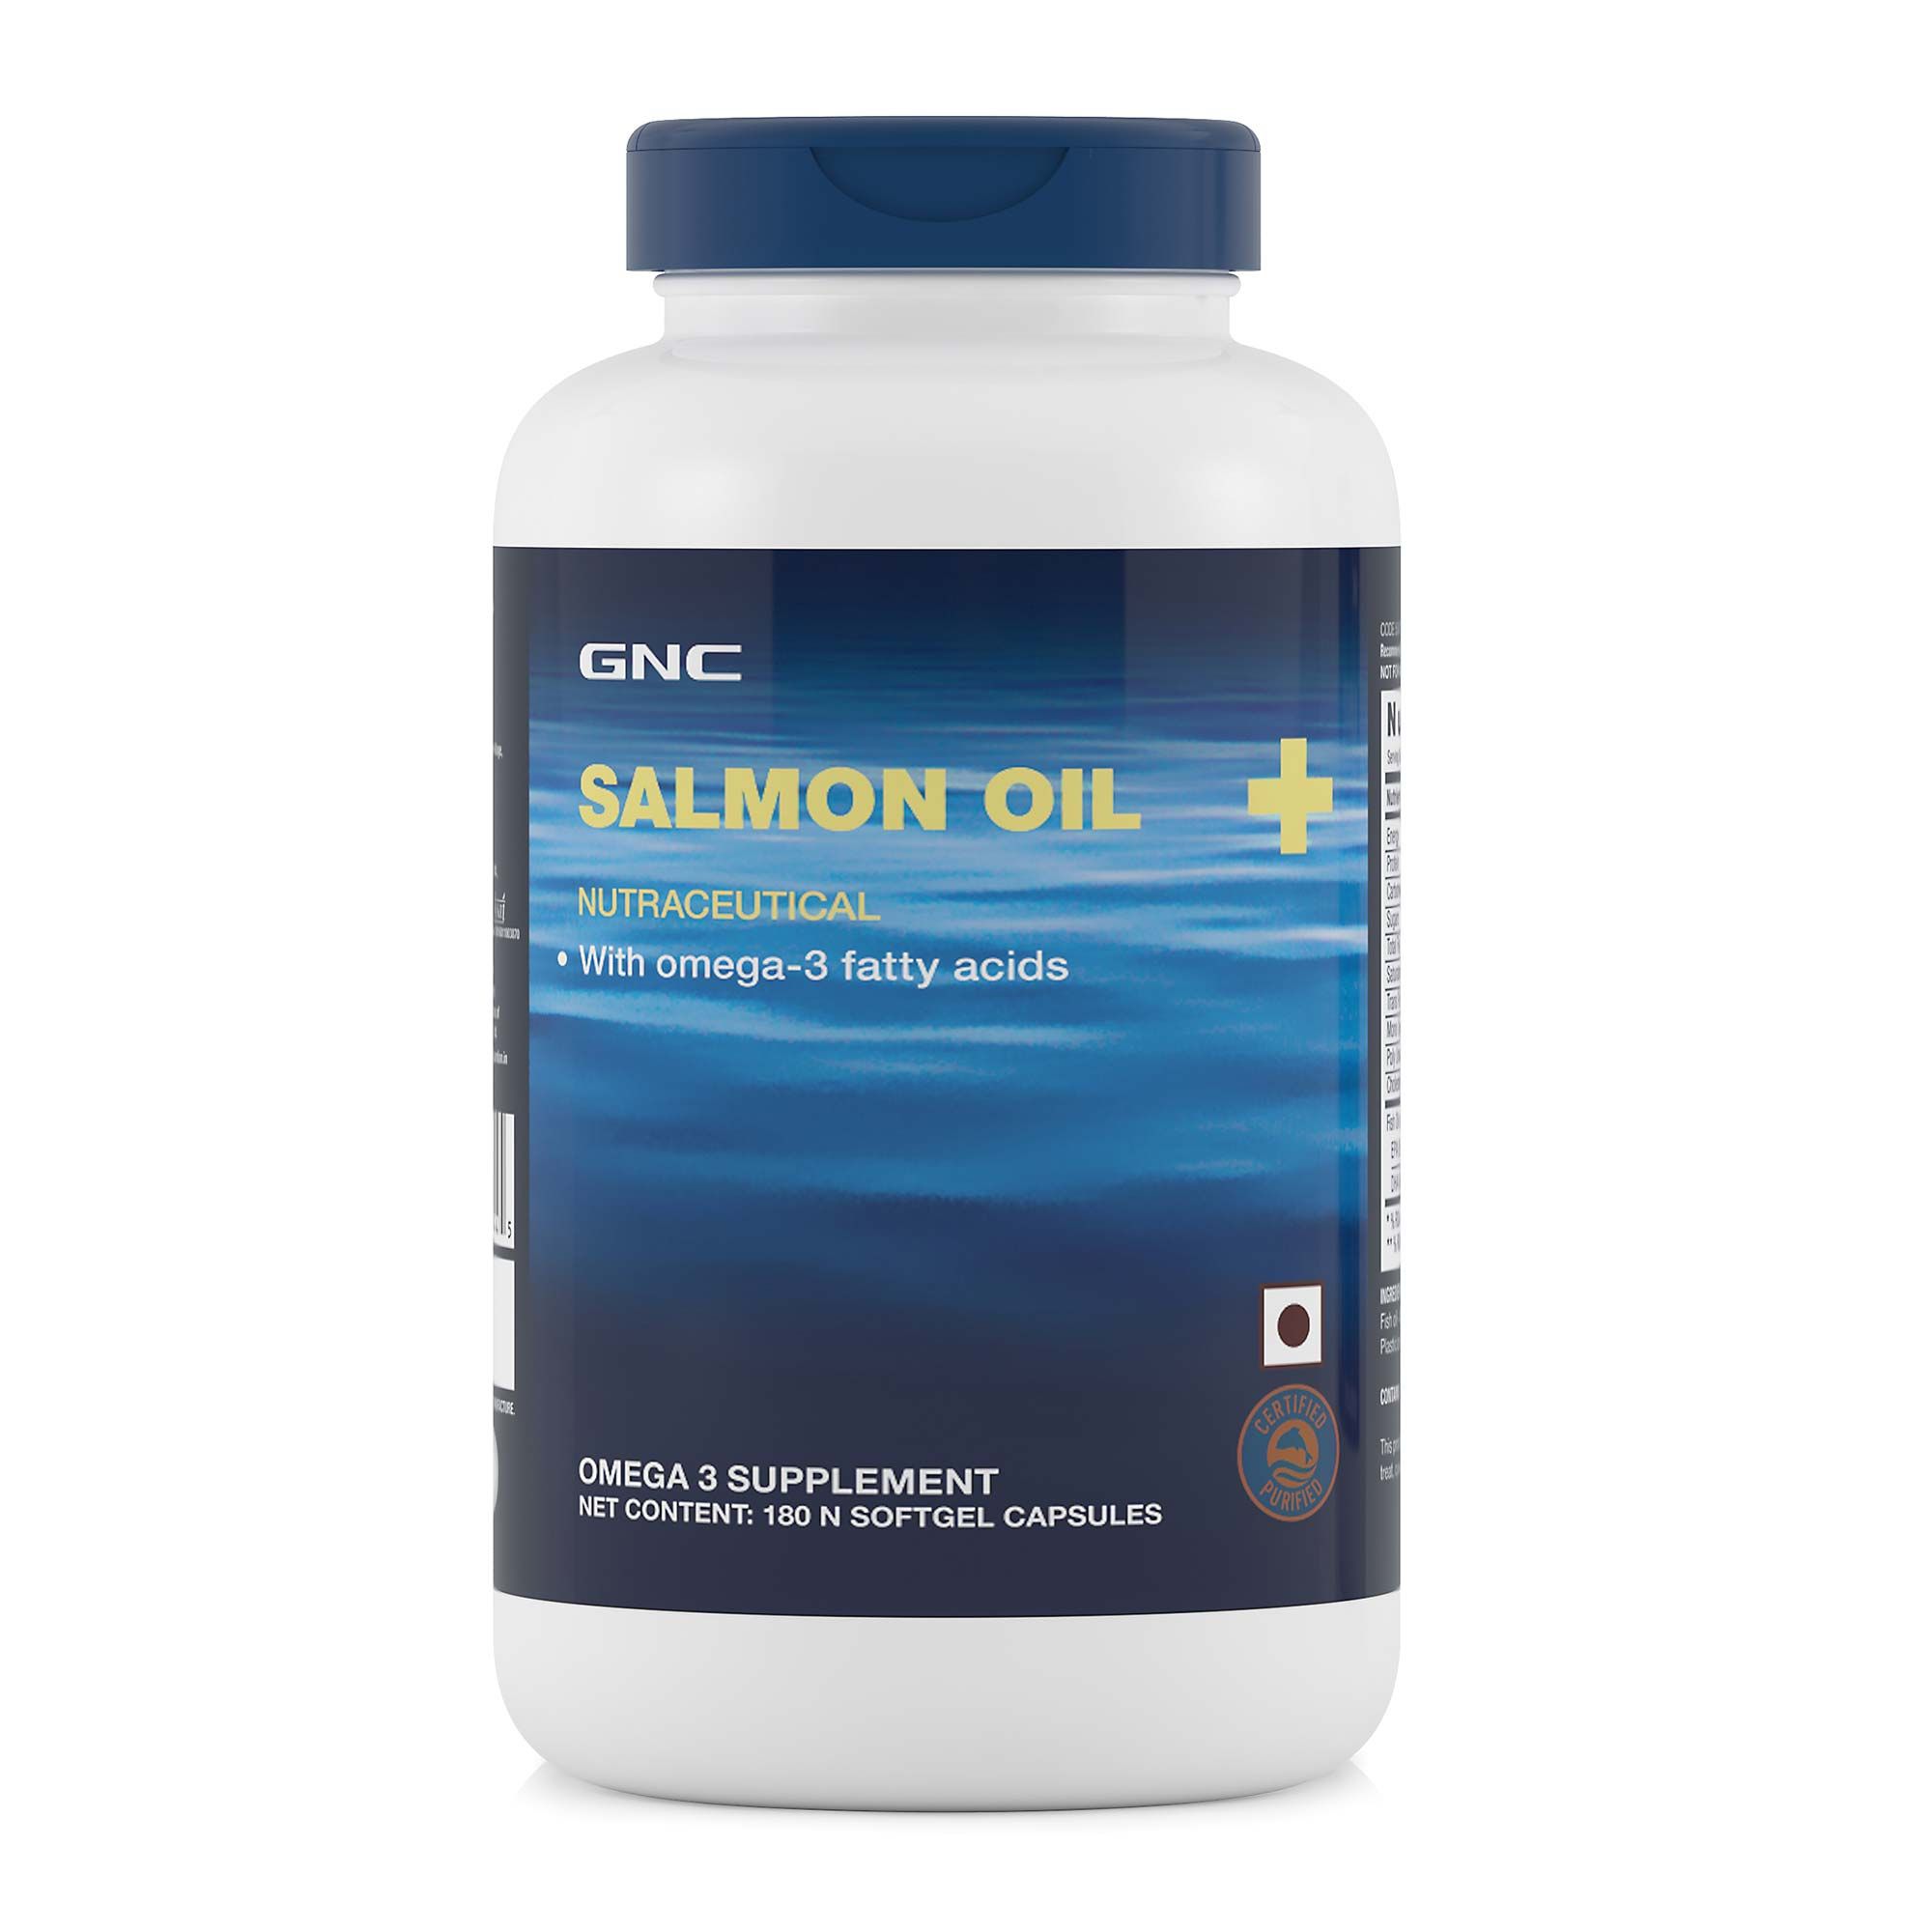 GNC Salmon Oil 1000 mg - 300 mg of highly absorbable EPA/DHA Omega-3s